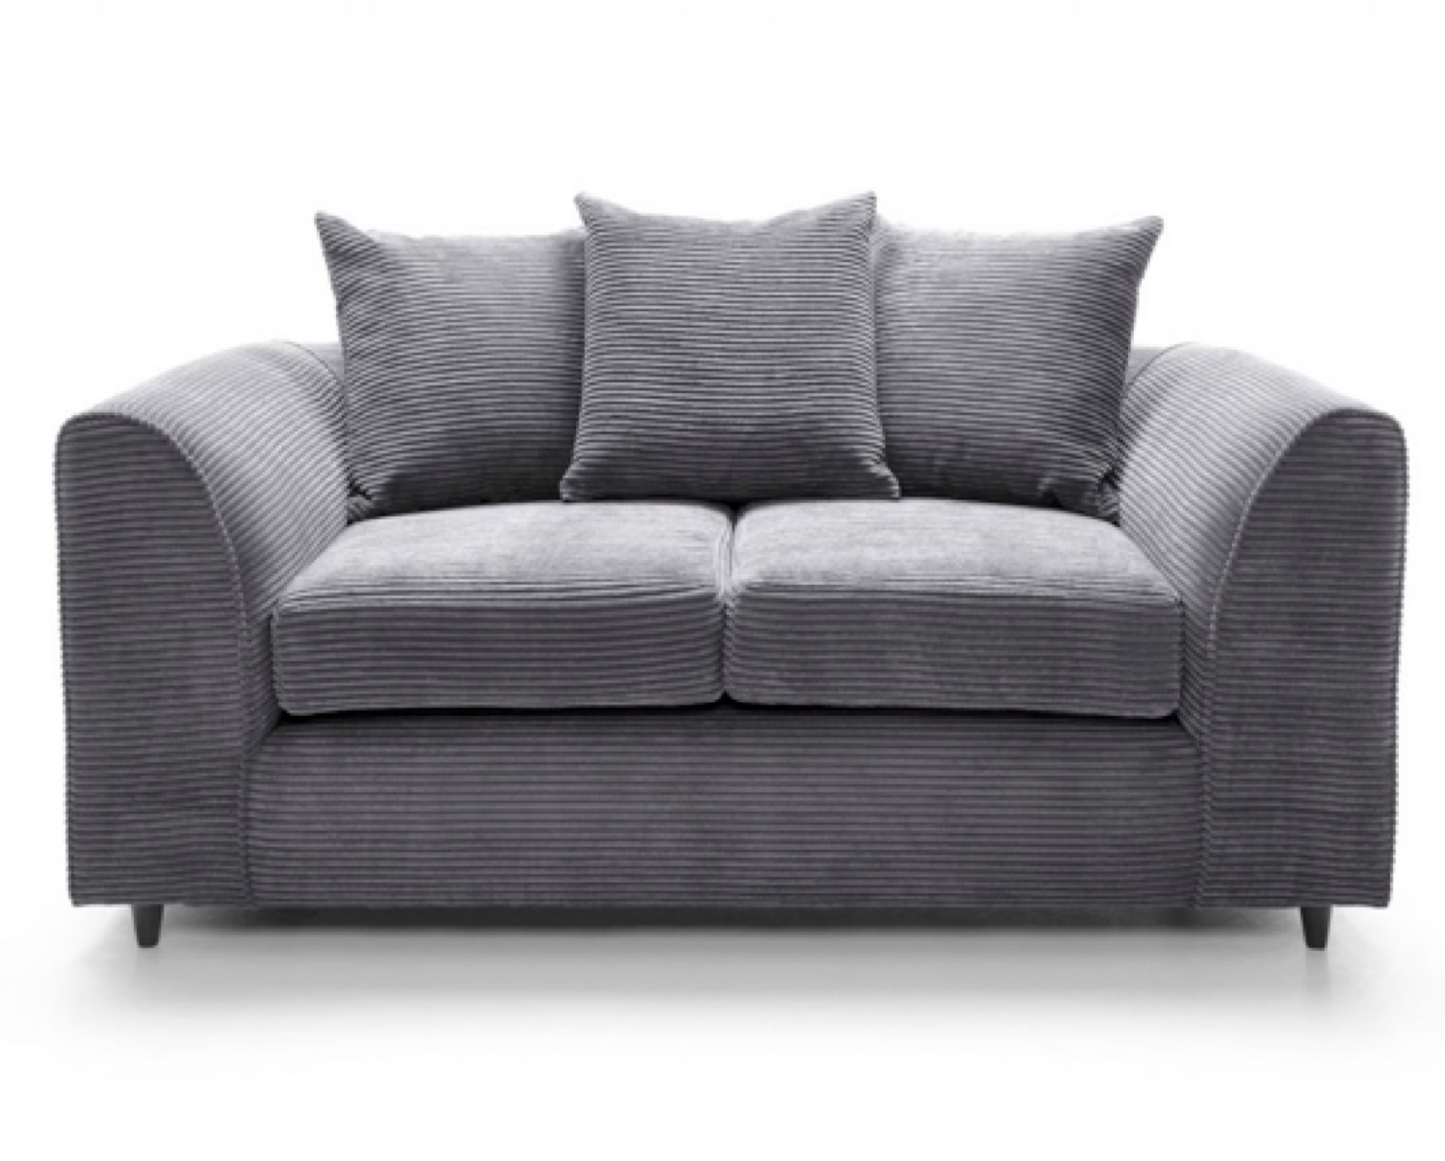 Tyler 2 Seater Sofa - Grey